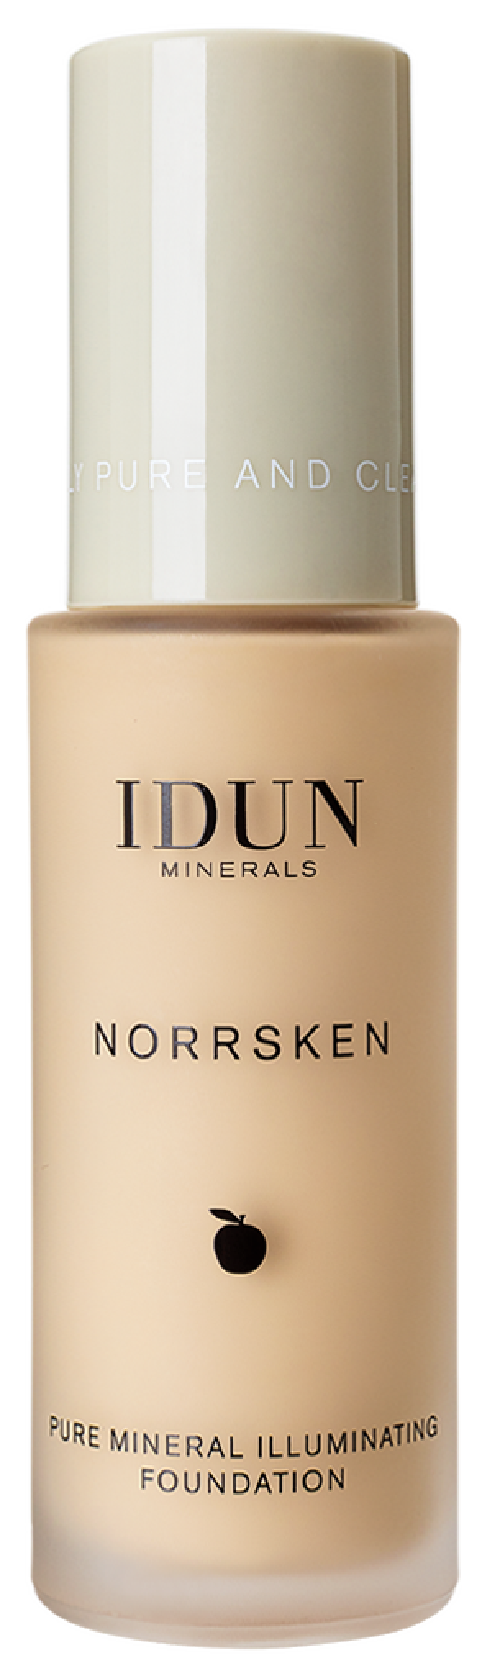 Norrsken Pure Mineral Illuminating Foundation, Freja, Lys/medium, 30 ml